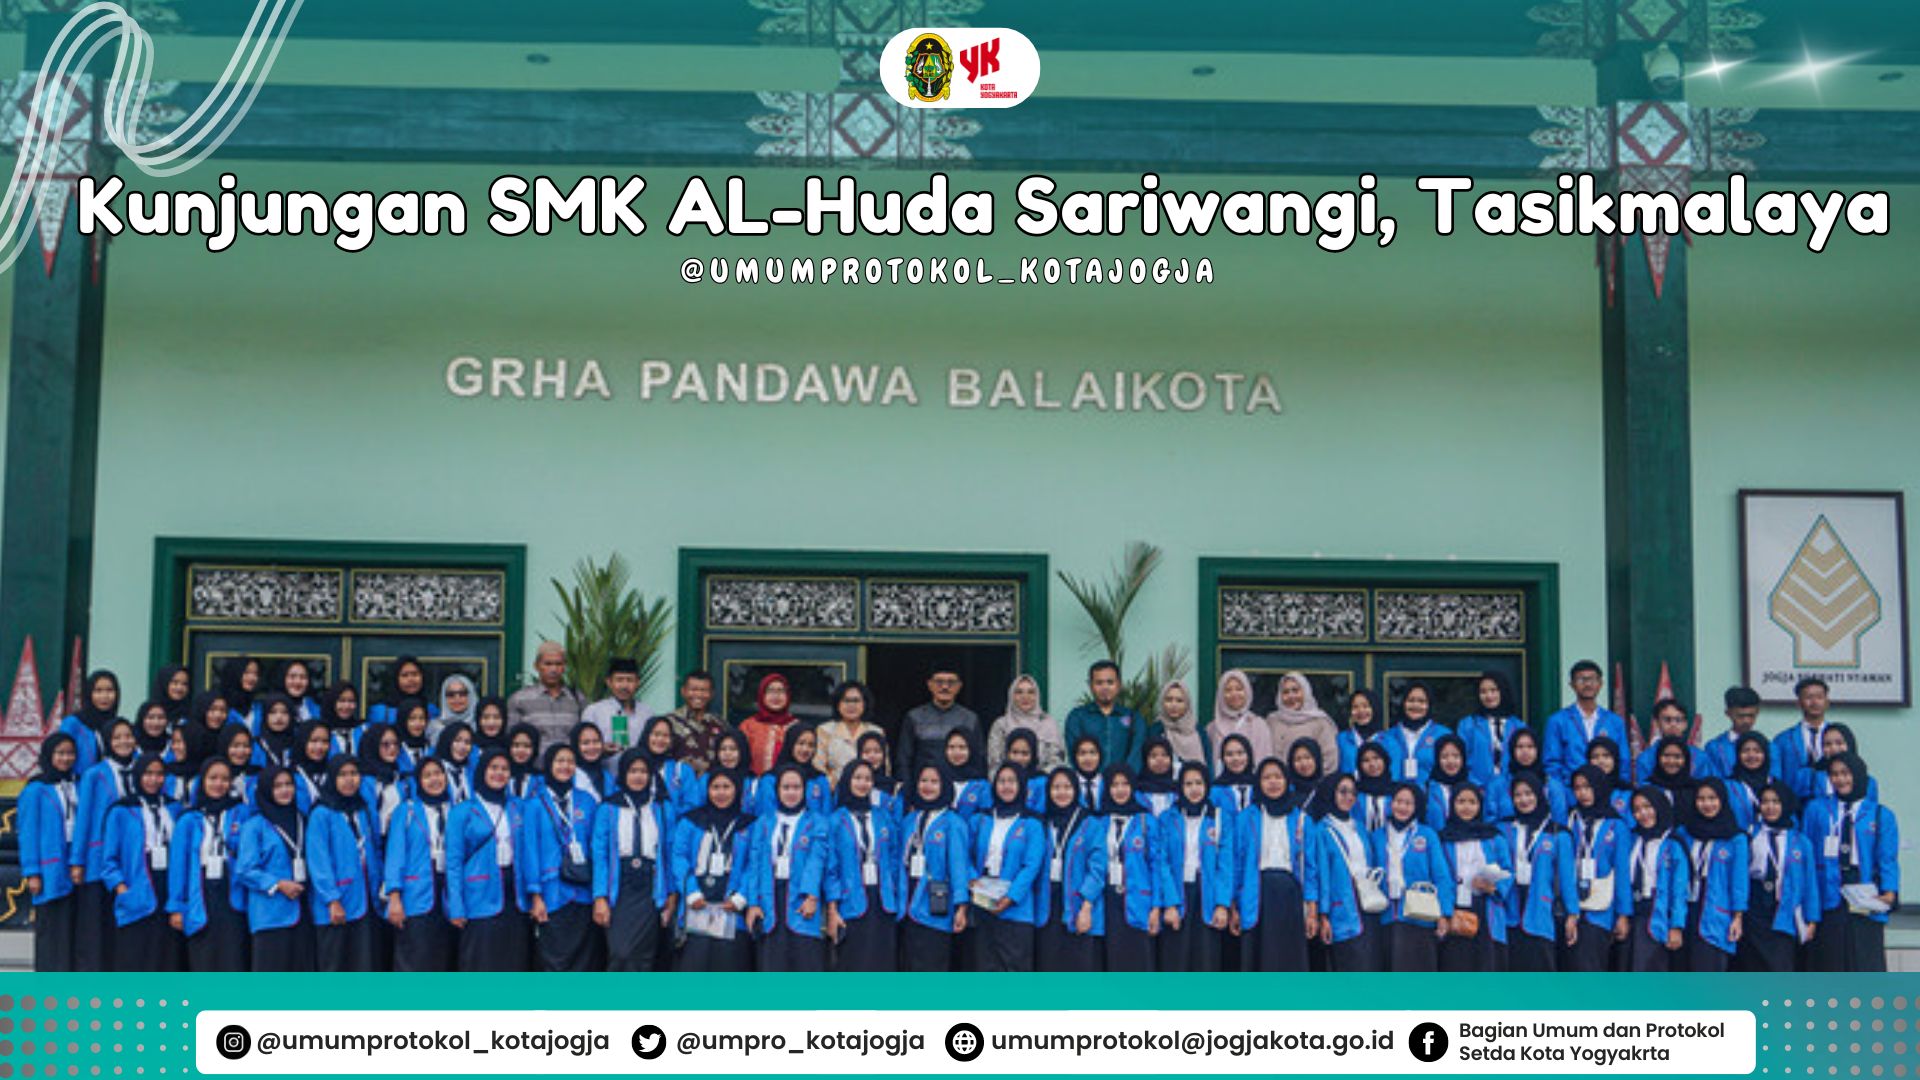 Kunjungan industry (Company Visit) dan karya wisata dari siswa dan siswi dari SMK AL-Huda Sariwangi, Tasikmalaya, Jawa Barat.